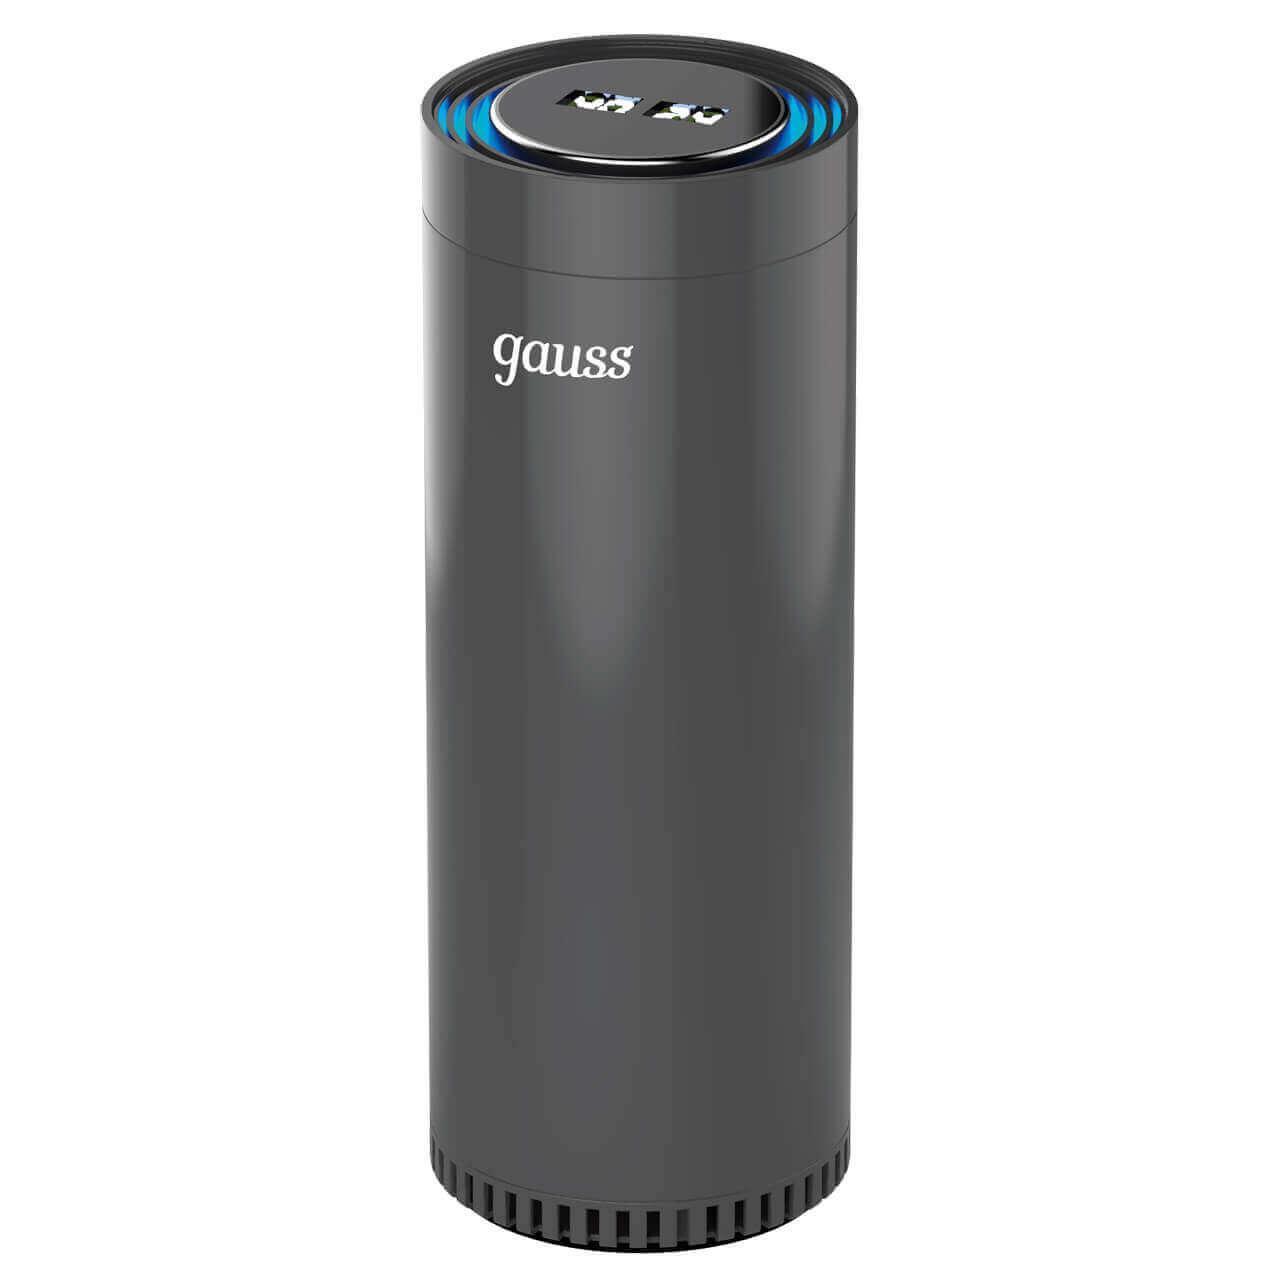 Очиститель воздуха Gauss guard чёрный с ионизатором GR020 очиститель воздуха gauss guard чёрный с ионизатором gr020